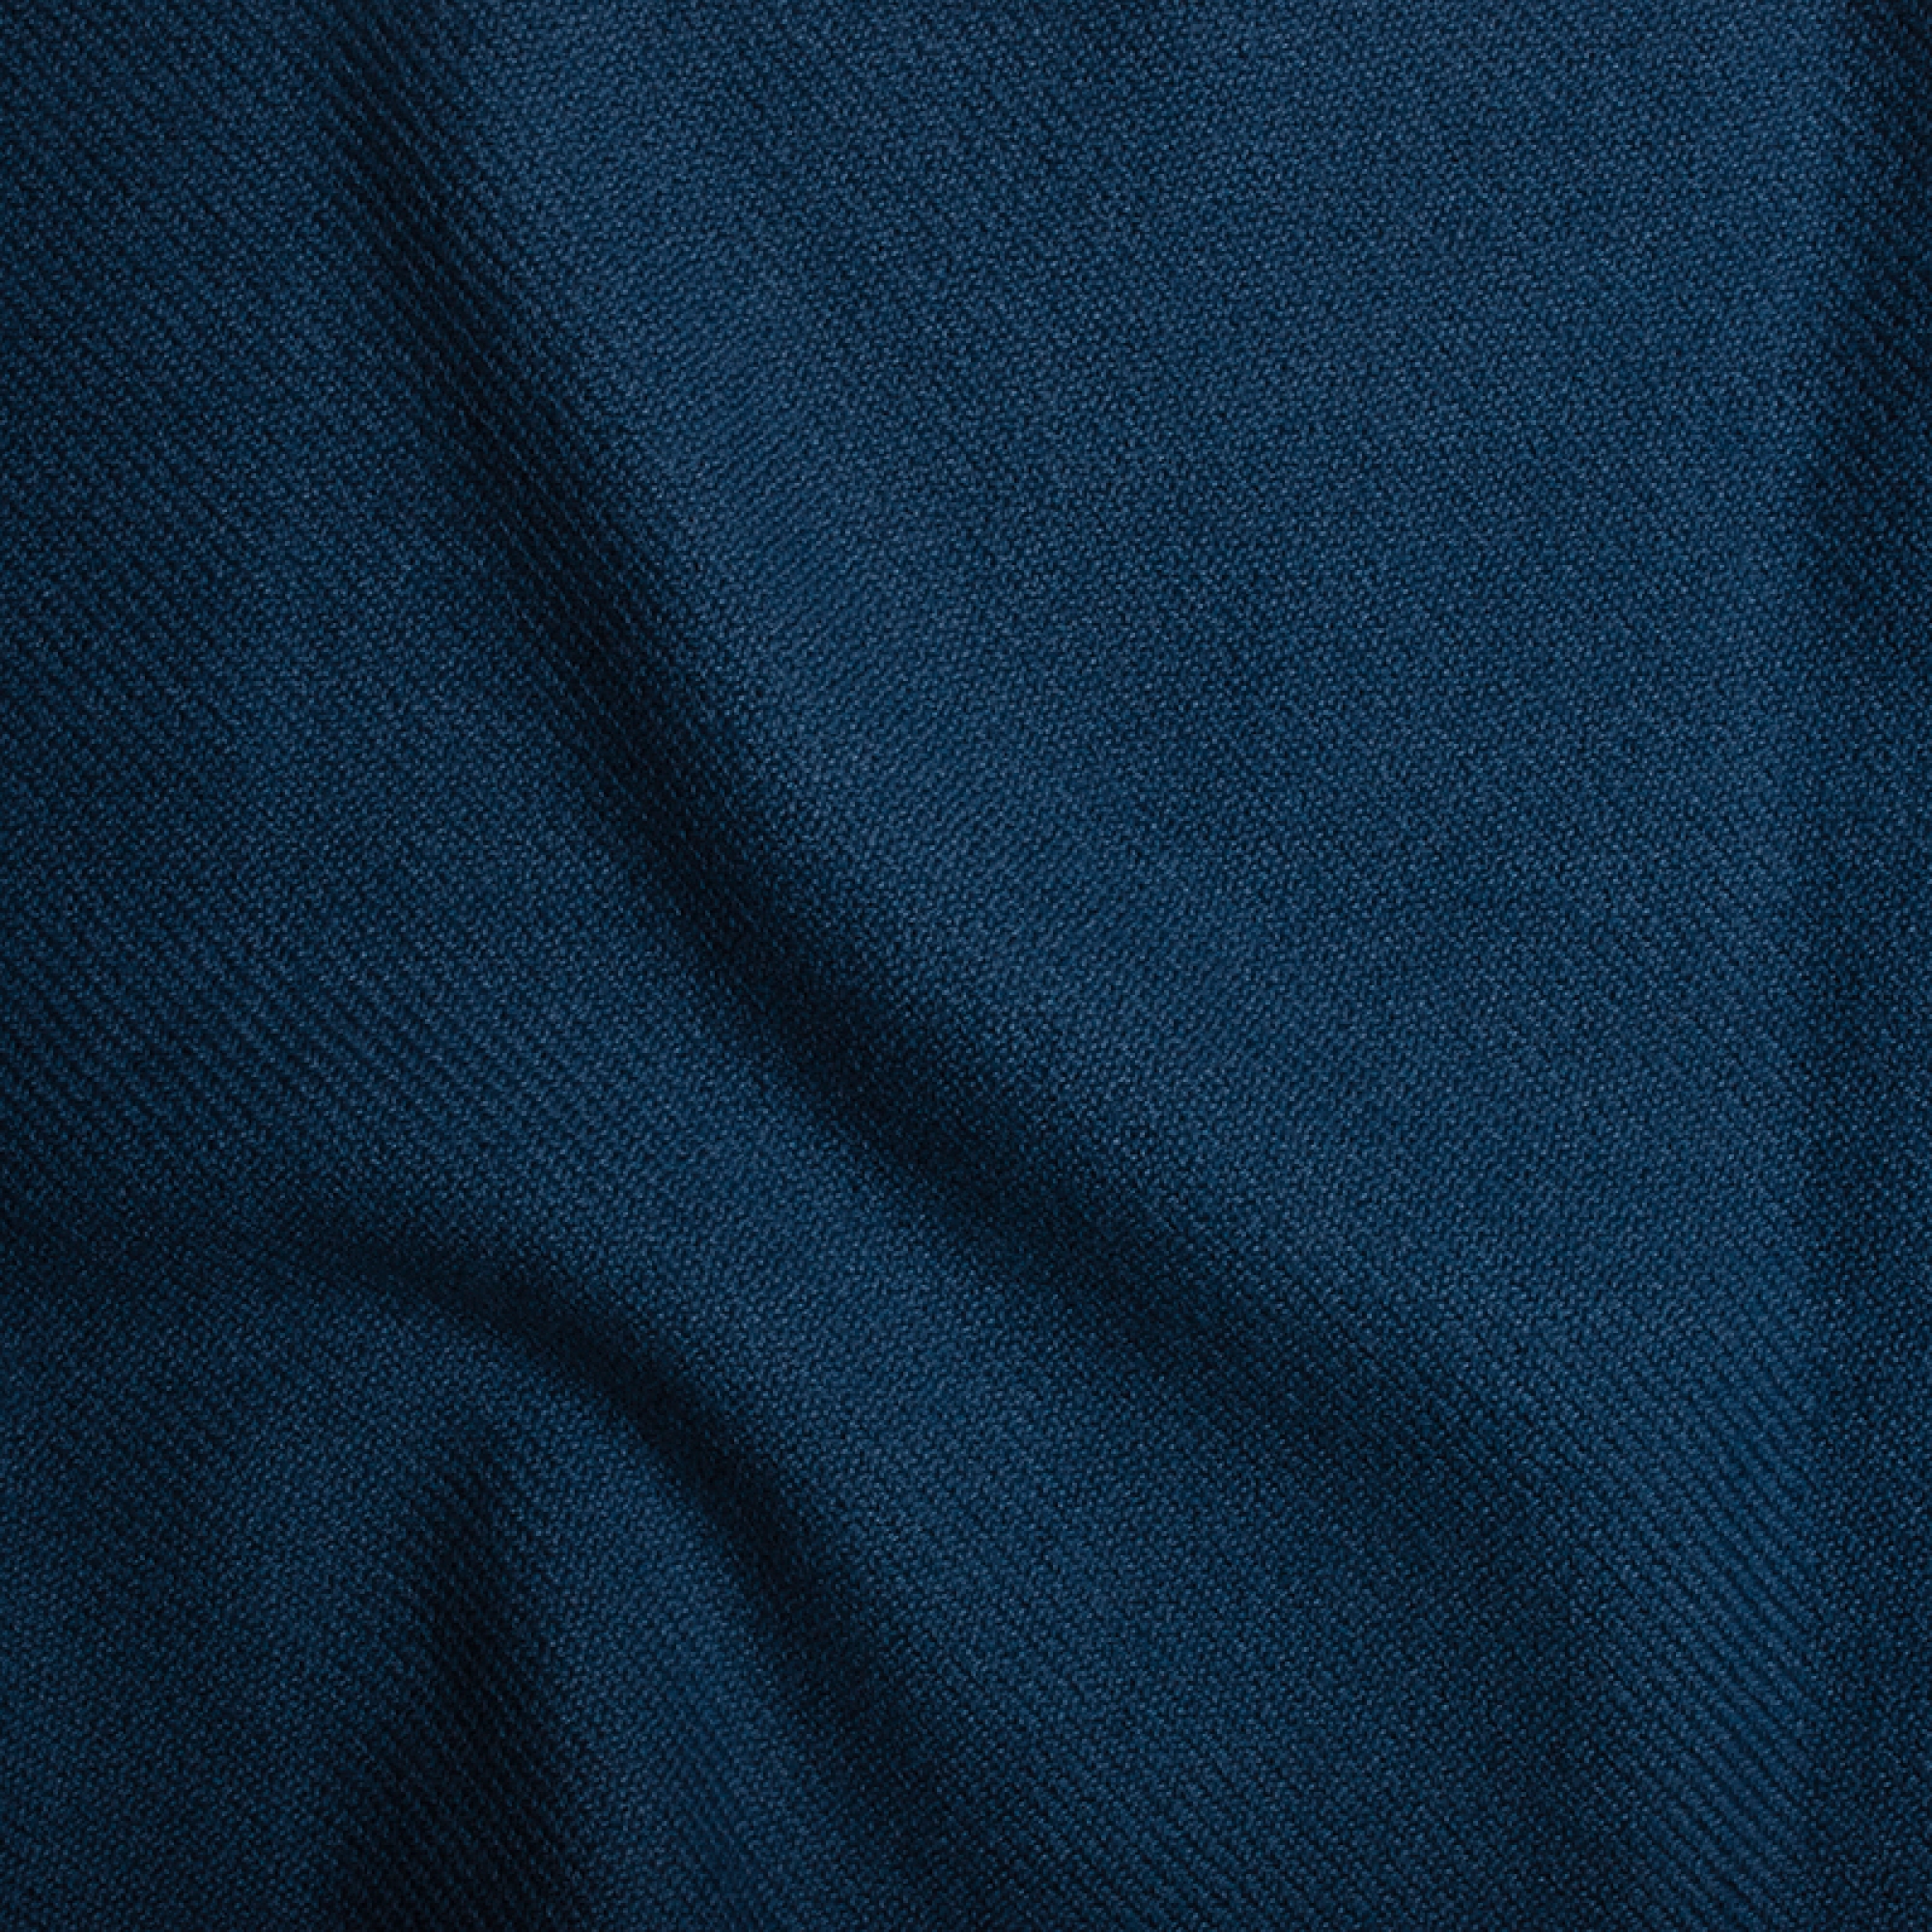 Kasjmier dames kasjmier thuiskleding toodoo plain l 220 x 220 pruissisch blauw 220x220cm